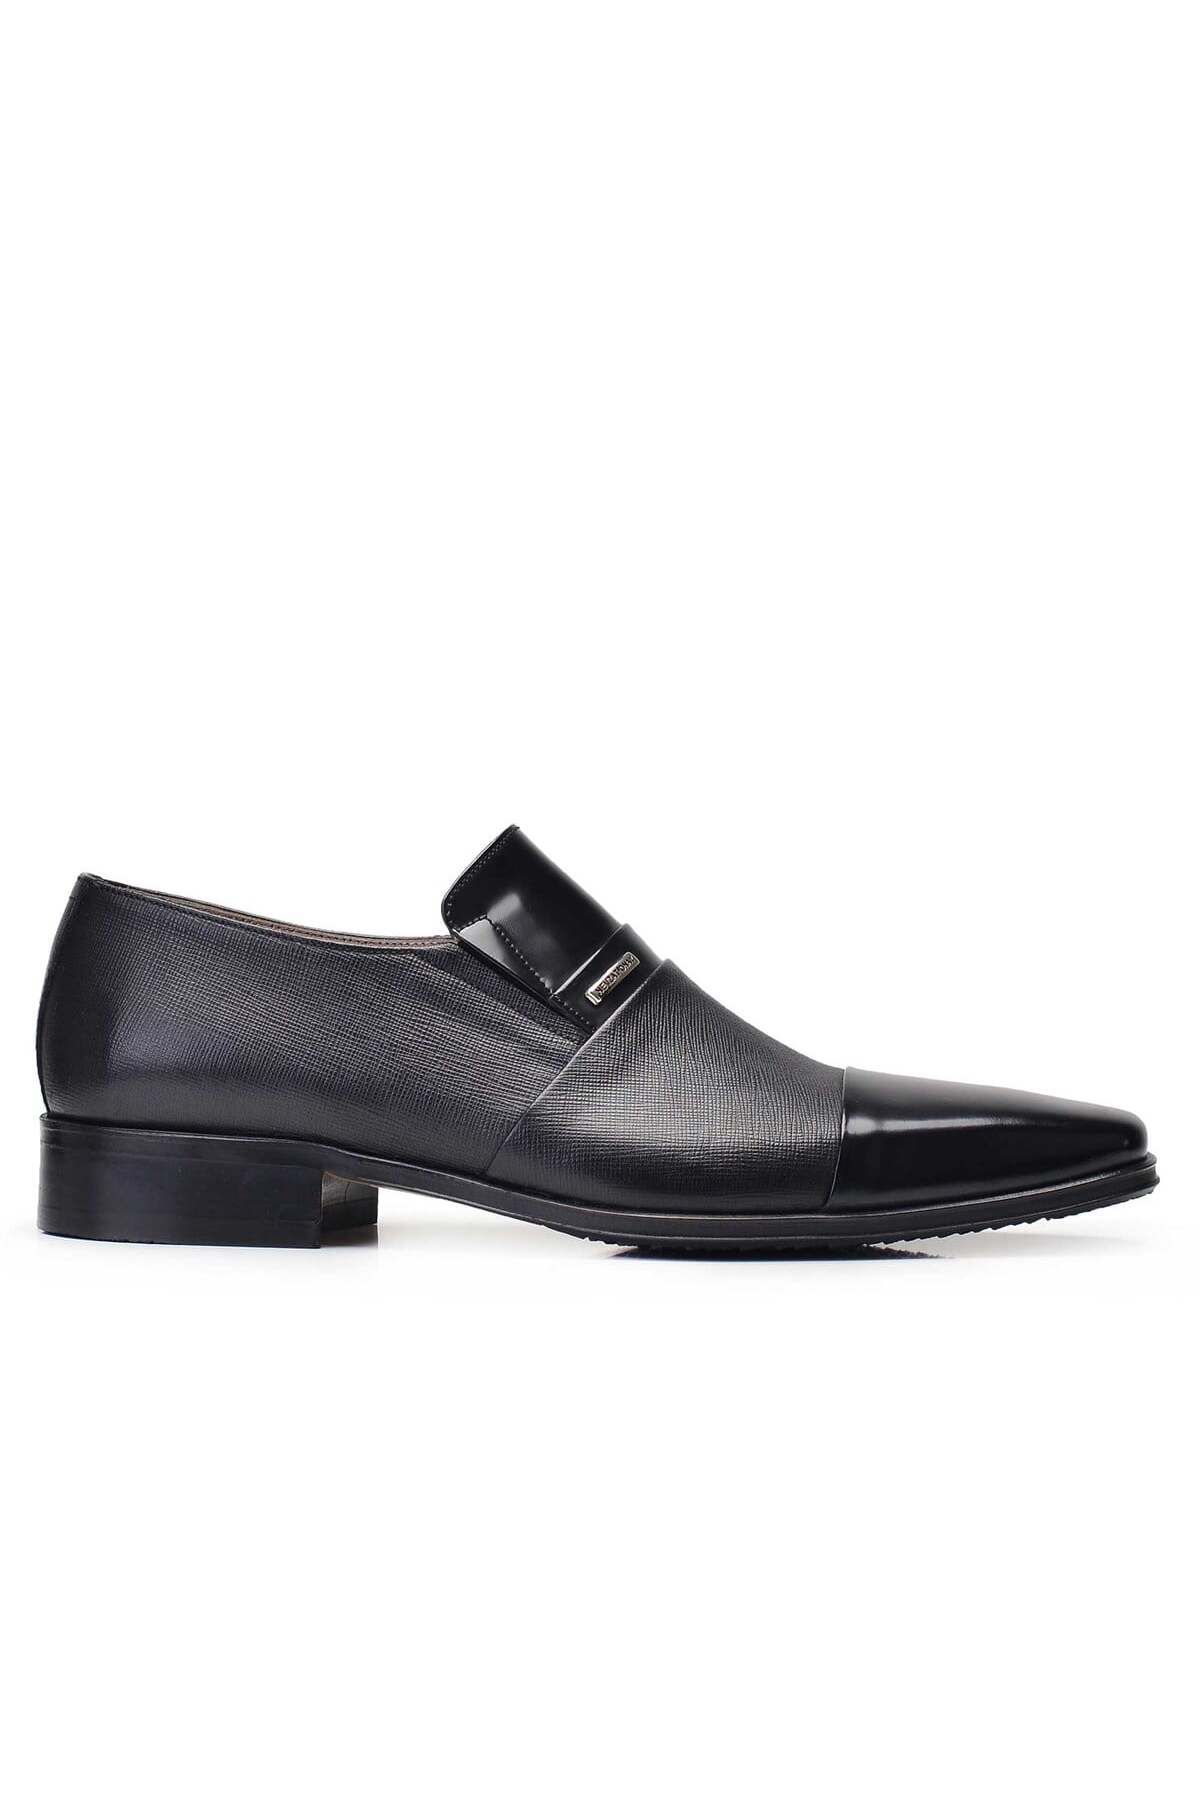 Nevzat Onay Siyah Klasik Loafer Erkek Ayakkabı -11834-